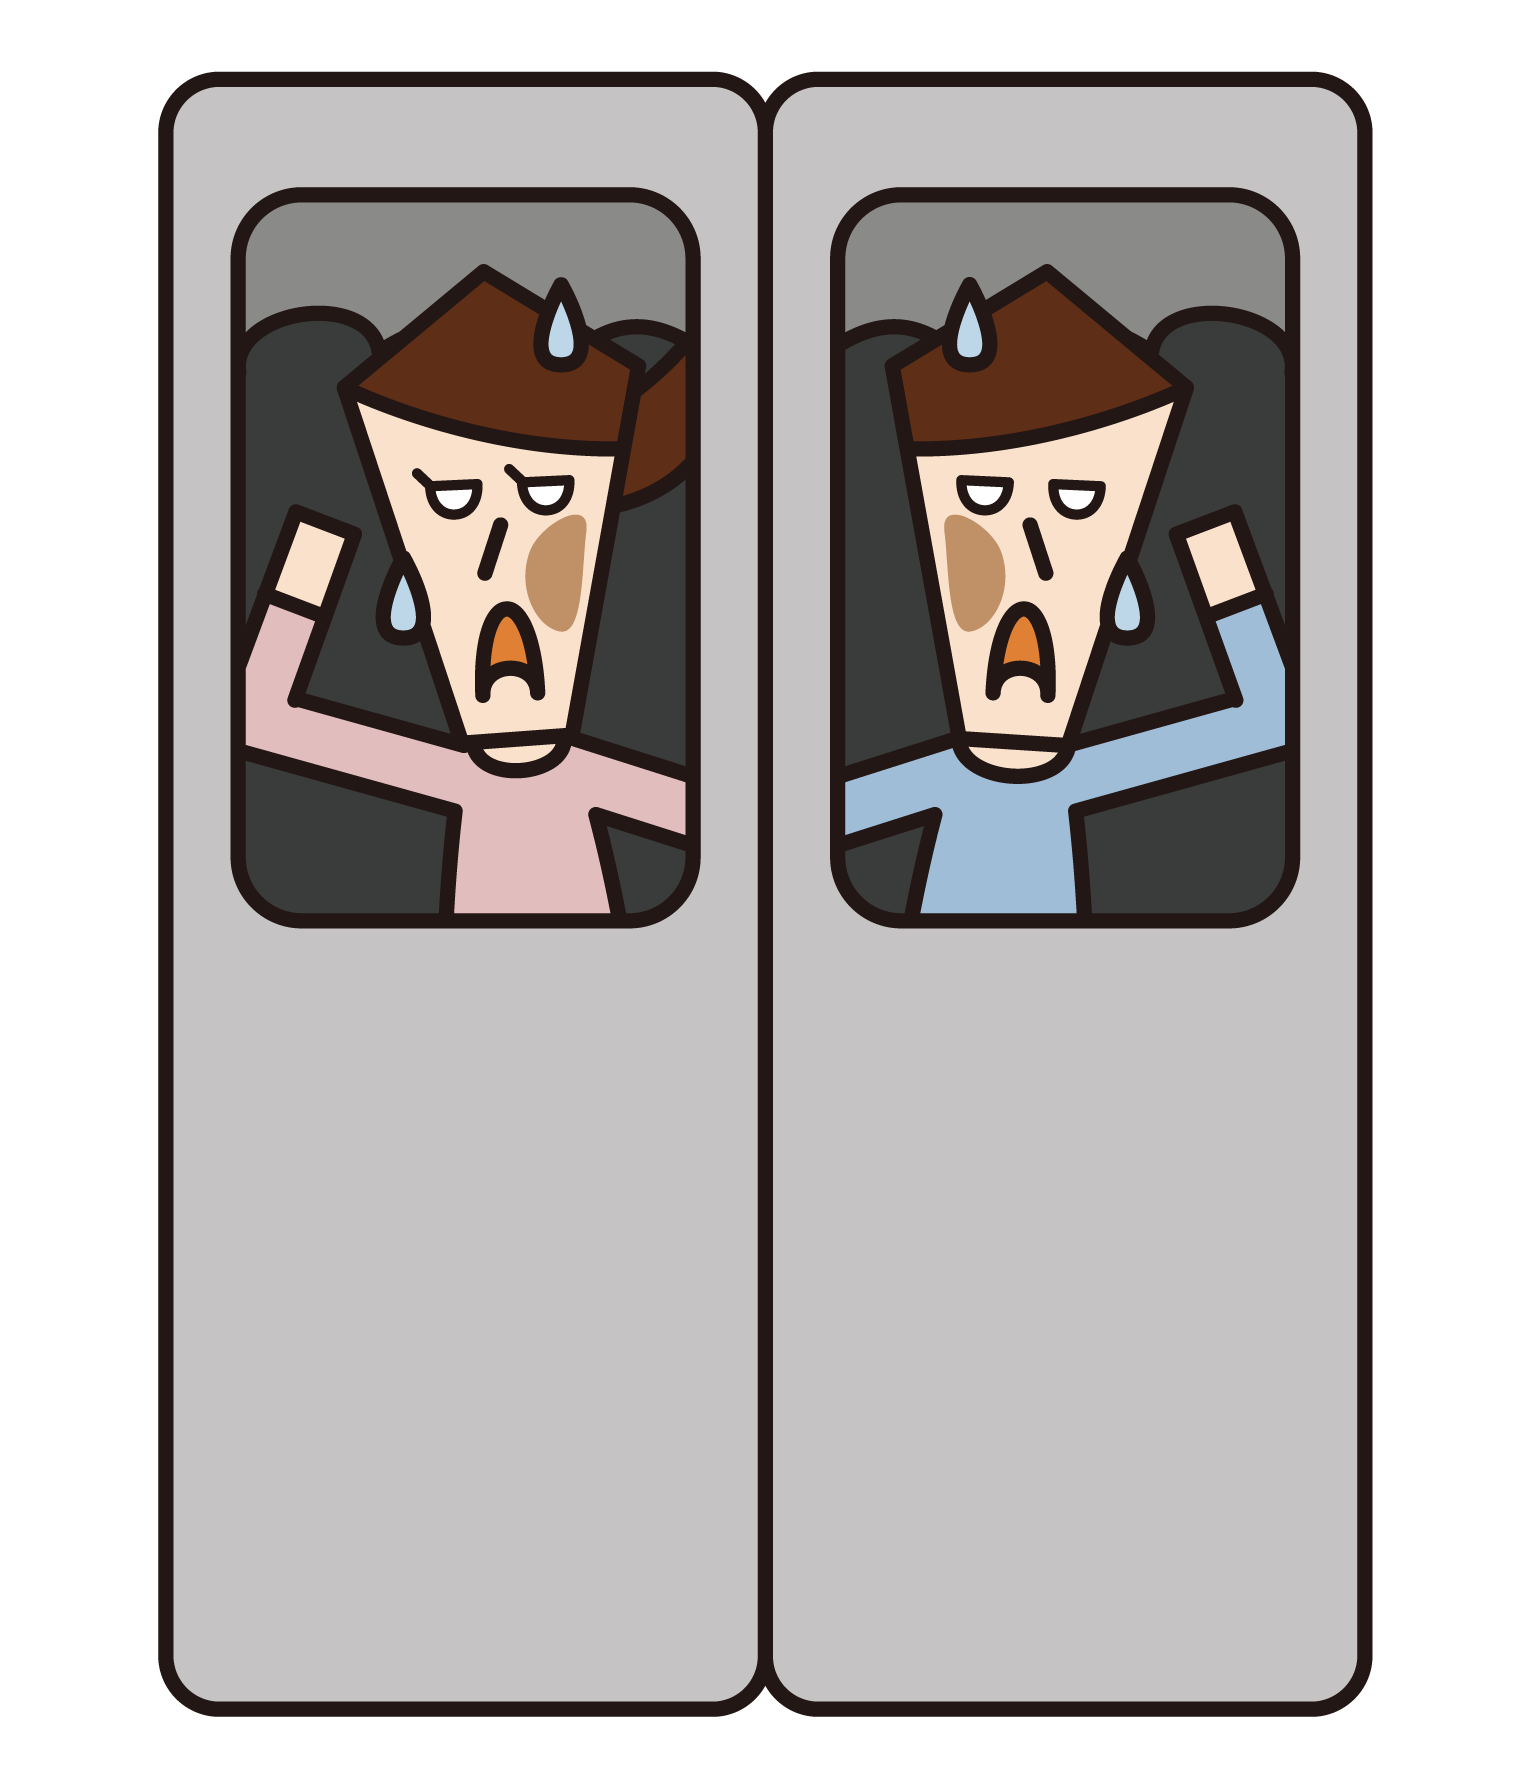 満員電車に乗る人のイラスト